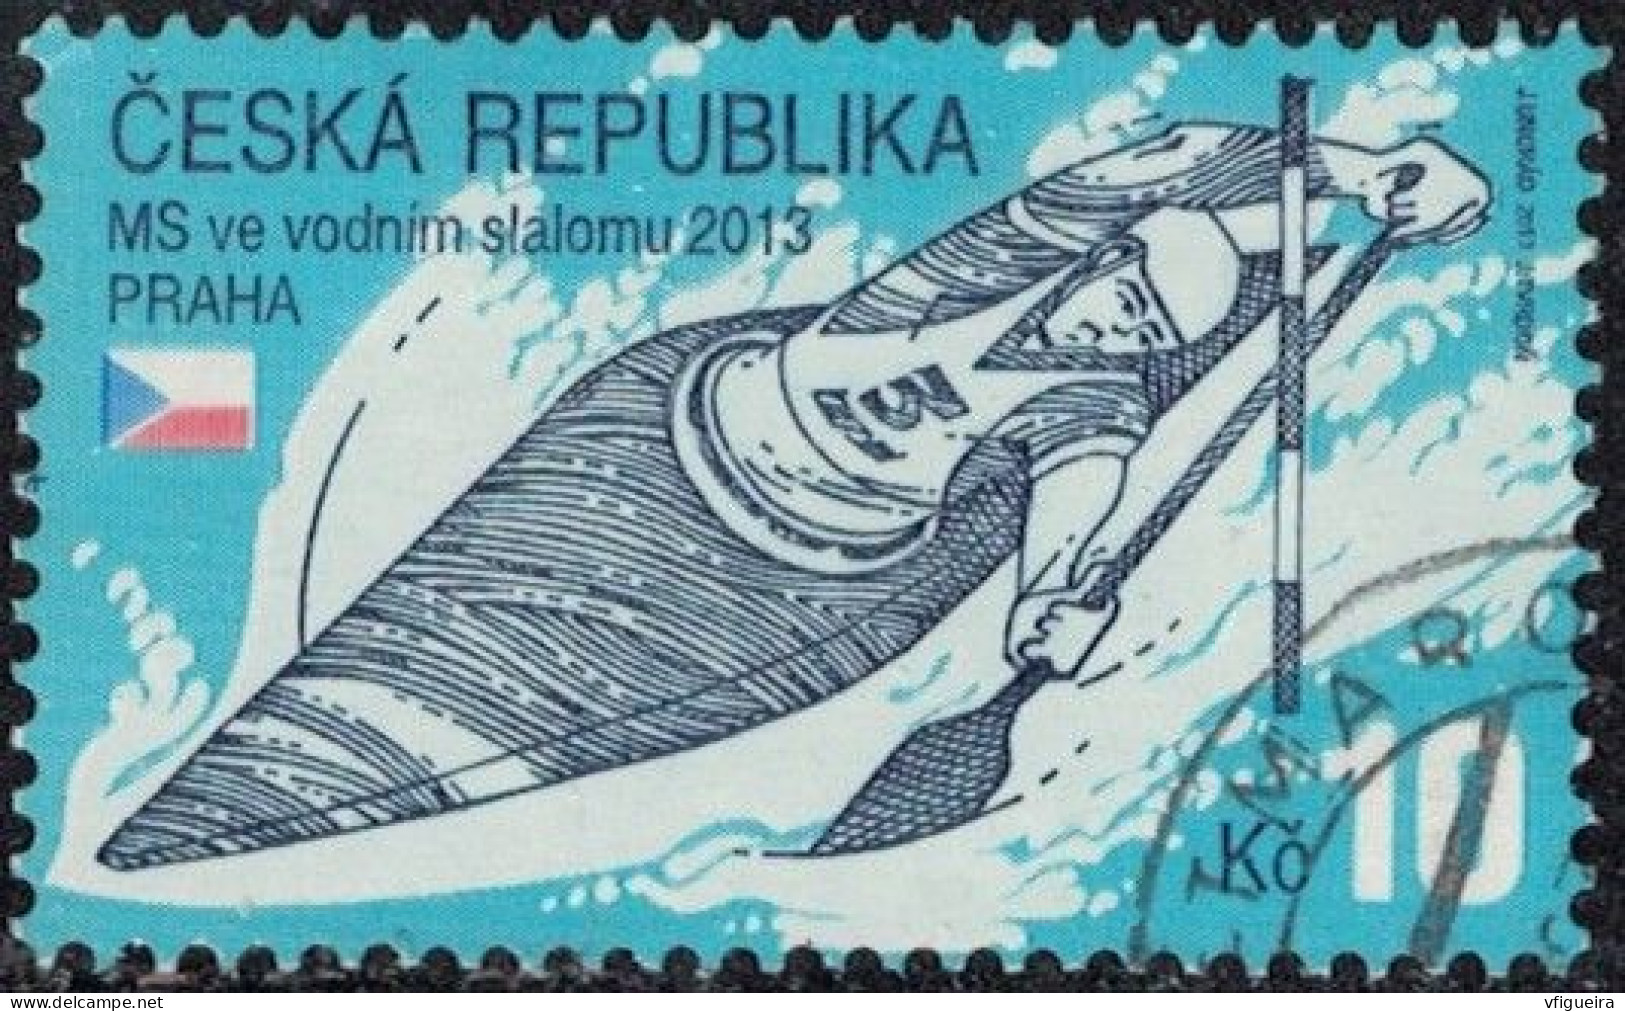 République Tchèque 2013 Oblitéré Used Championnats Du Monde De Slalom De Kayak Y&T CZ 686 SU - Oblitérés